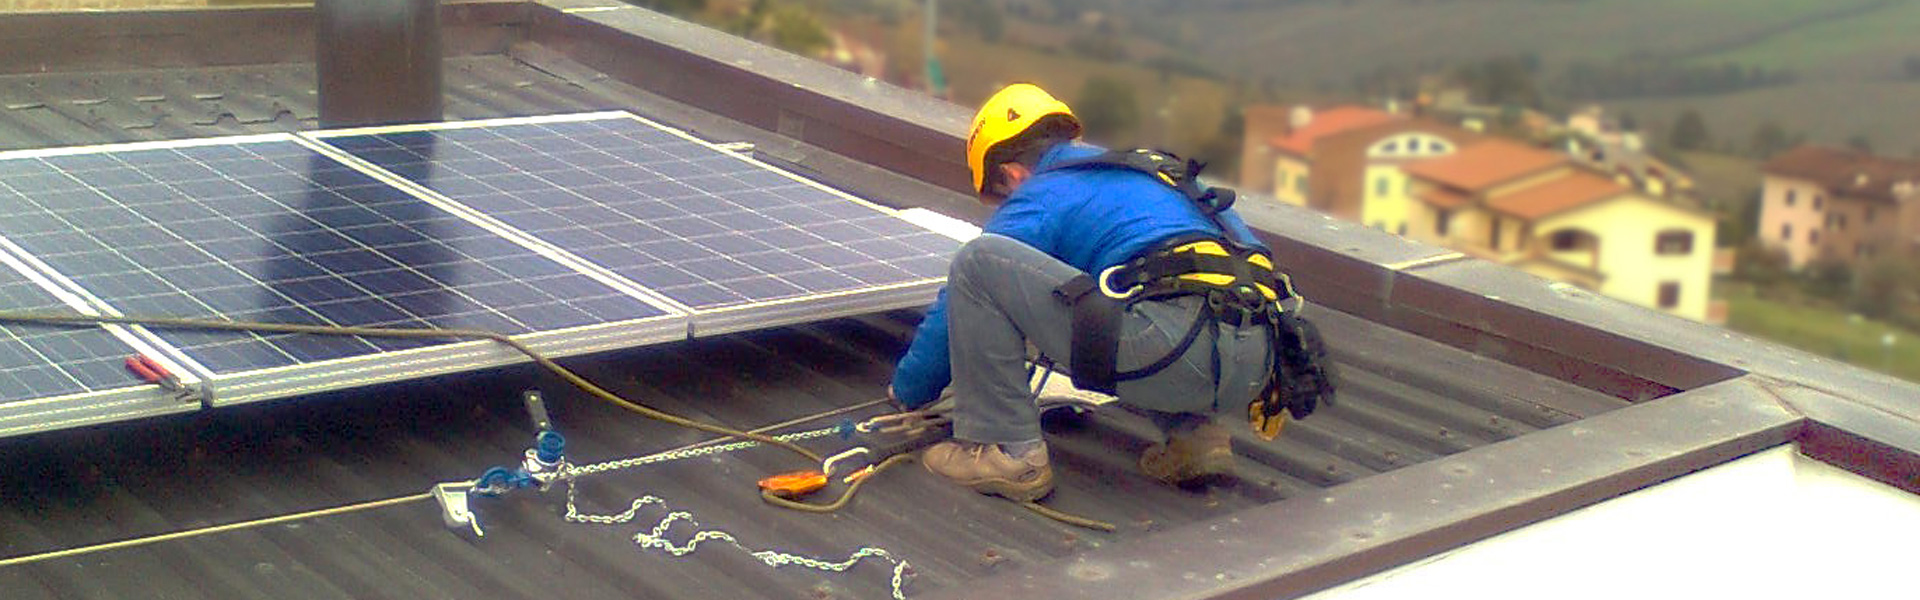 Operatore intento nella manutenzione di un impianto fotovoltaico posizionato su tetto